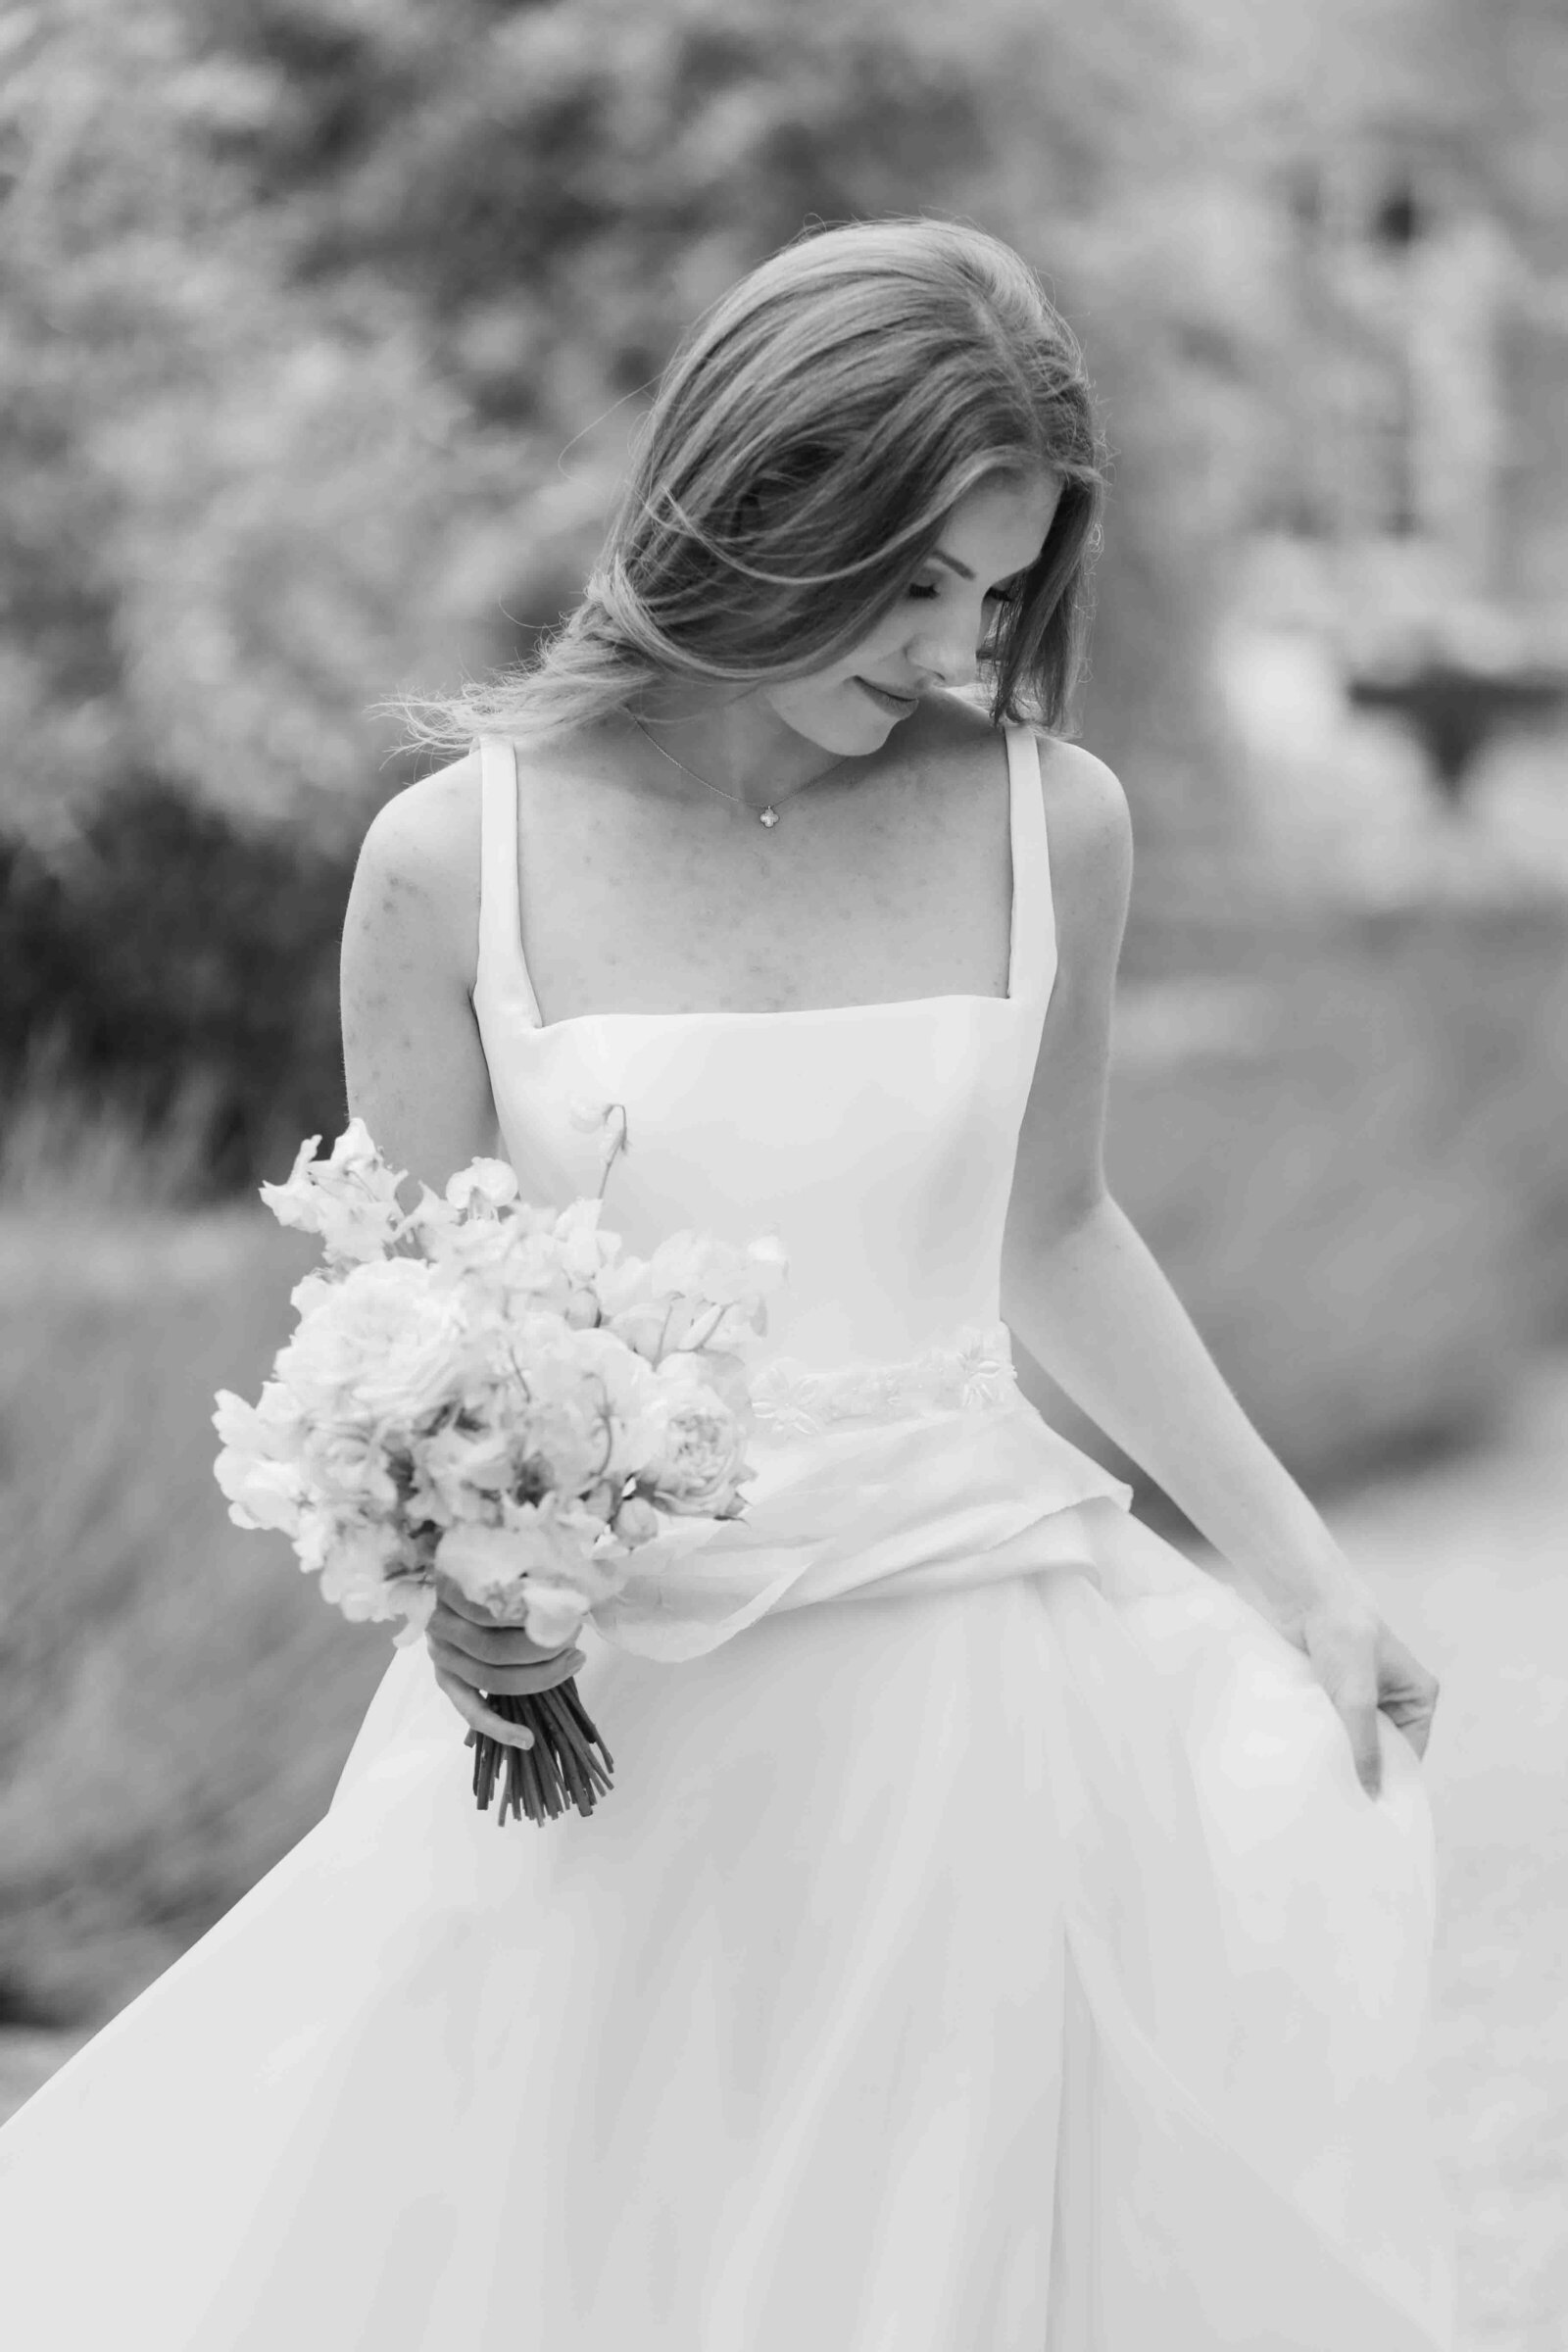 Portrait of bride with bouquet